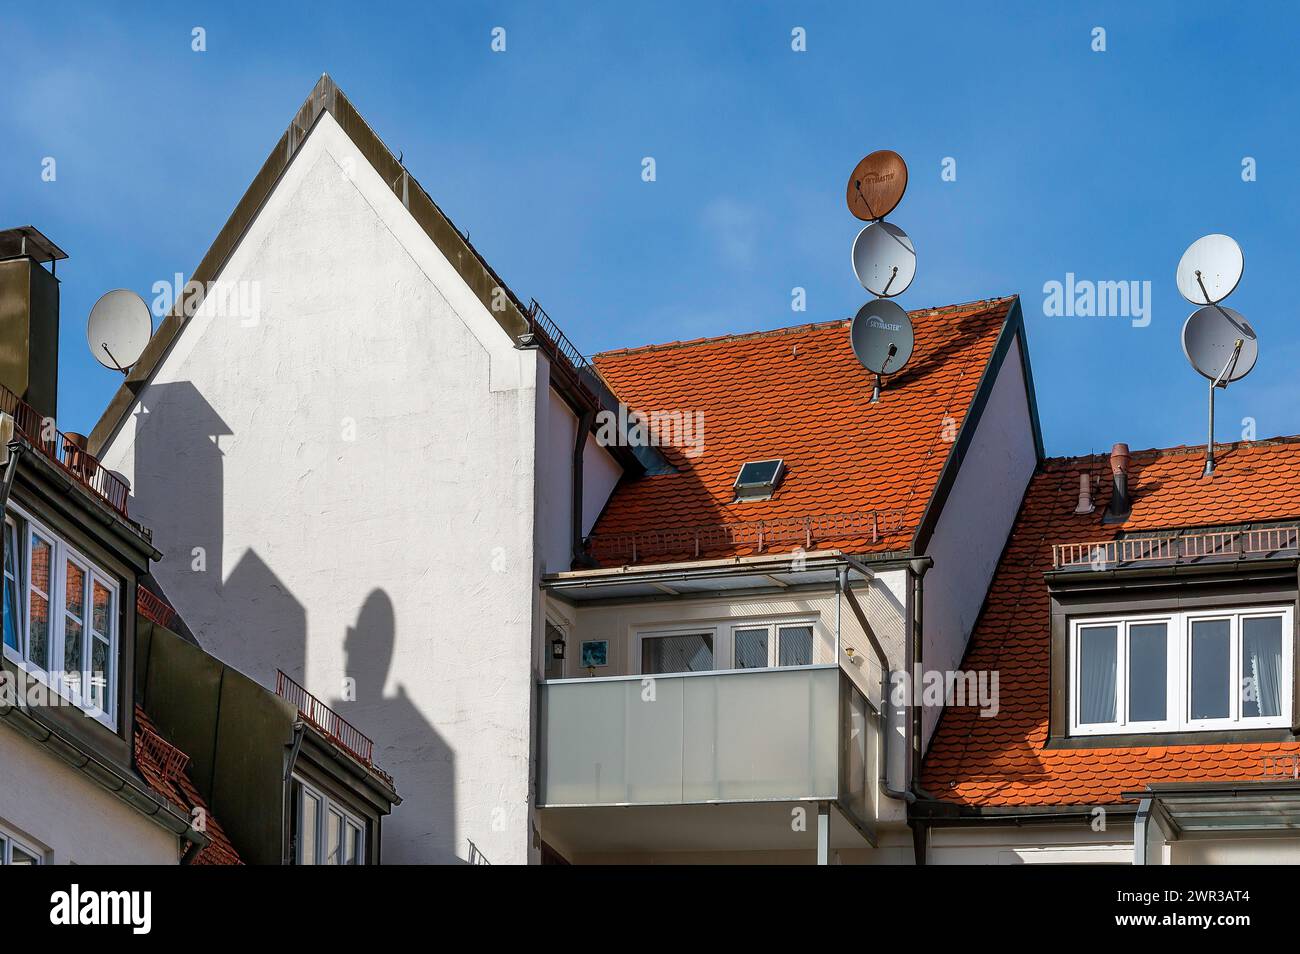 Toits en tuiles rouges, pignons pointus et antennes paraboliques, Kempten, Allgaeu, Bavière, Allemagne Banque D'Images